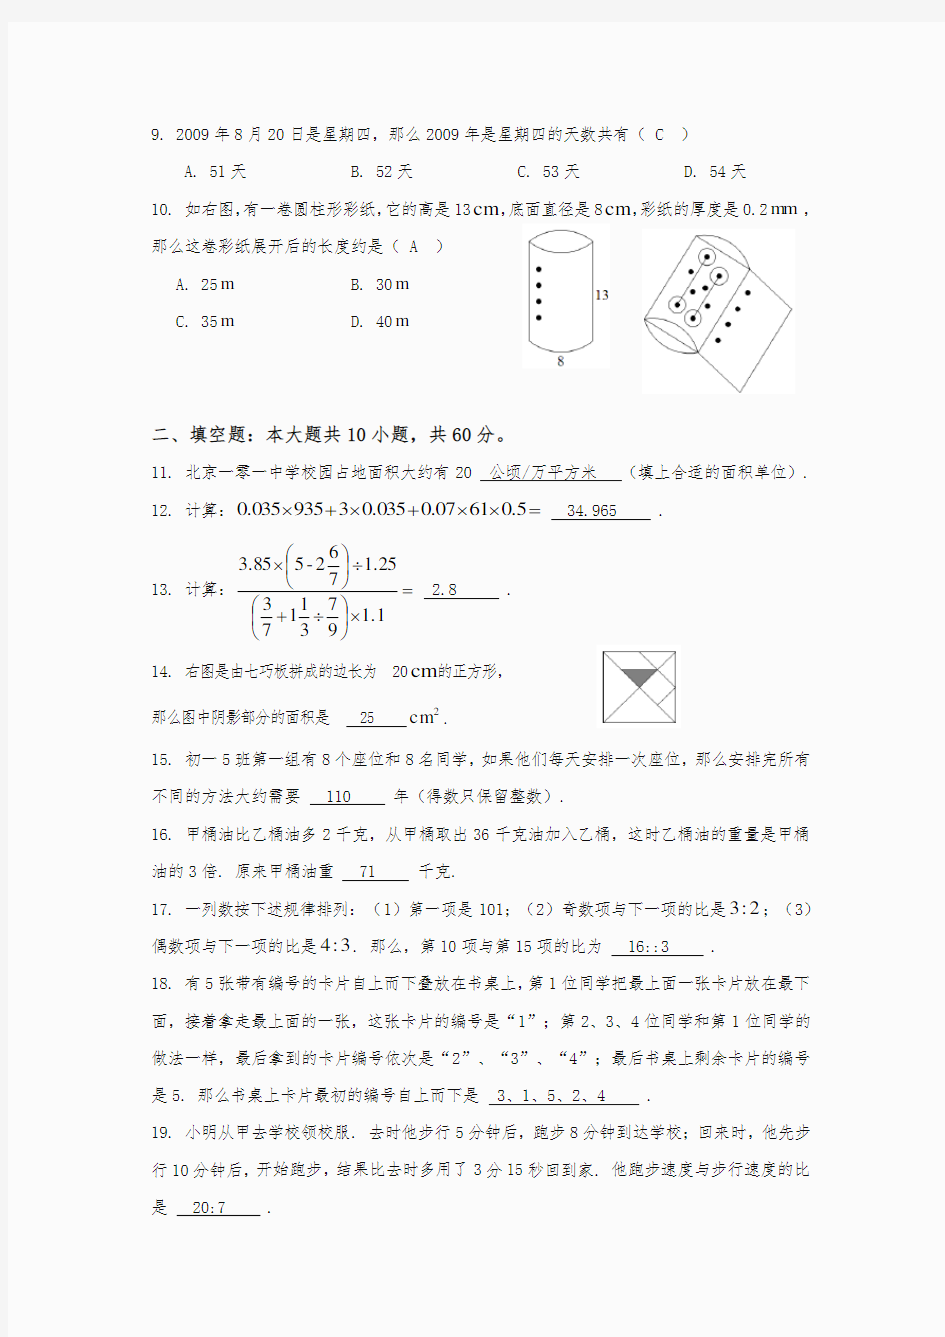 【最新】北京101中学初一新生分班测试试卷